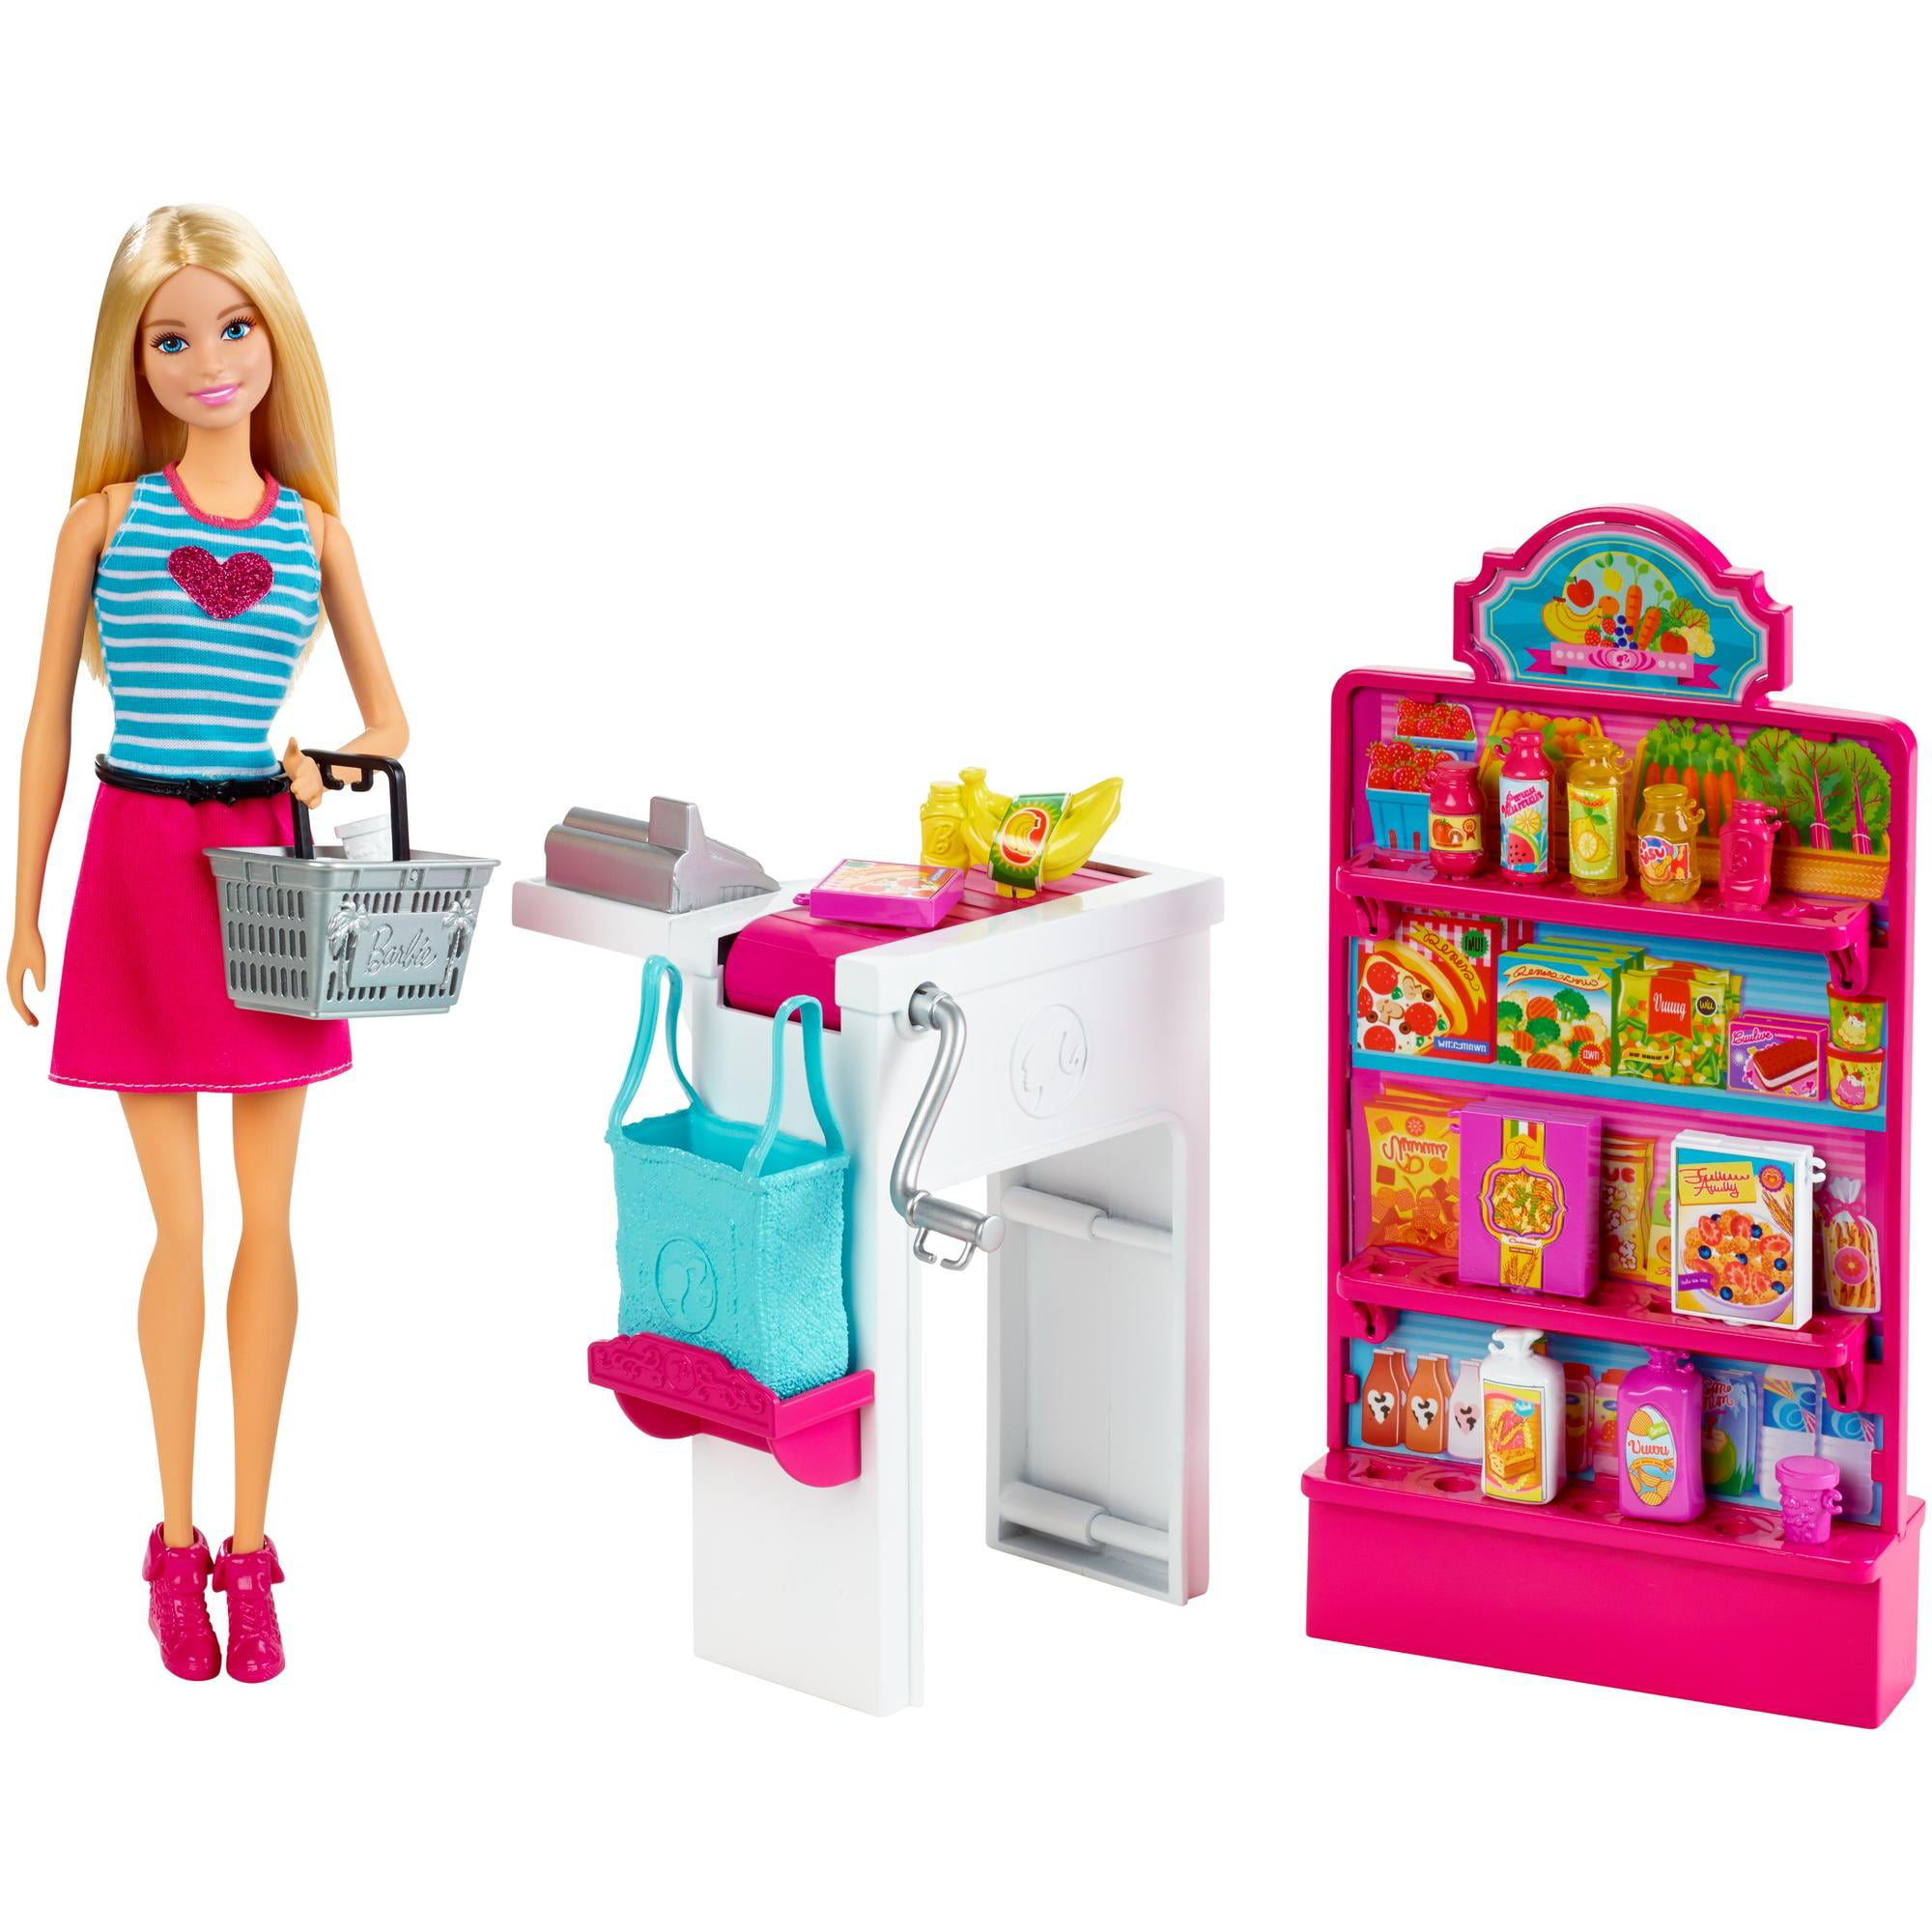 Игрушки для кукол купить. Набор Barbie продуктовый магазин Малибу, 29 см, ckp77. Barbie Malibu набор. Куклы Барби плейсет. Игровой набор Barbie продуктовая Лавка.